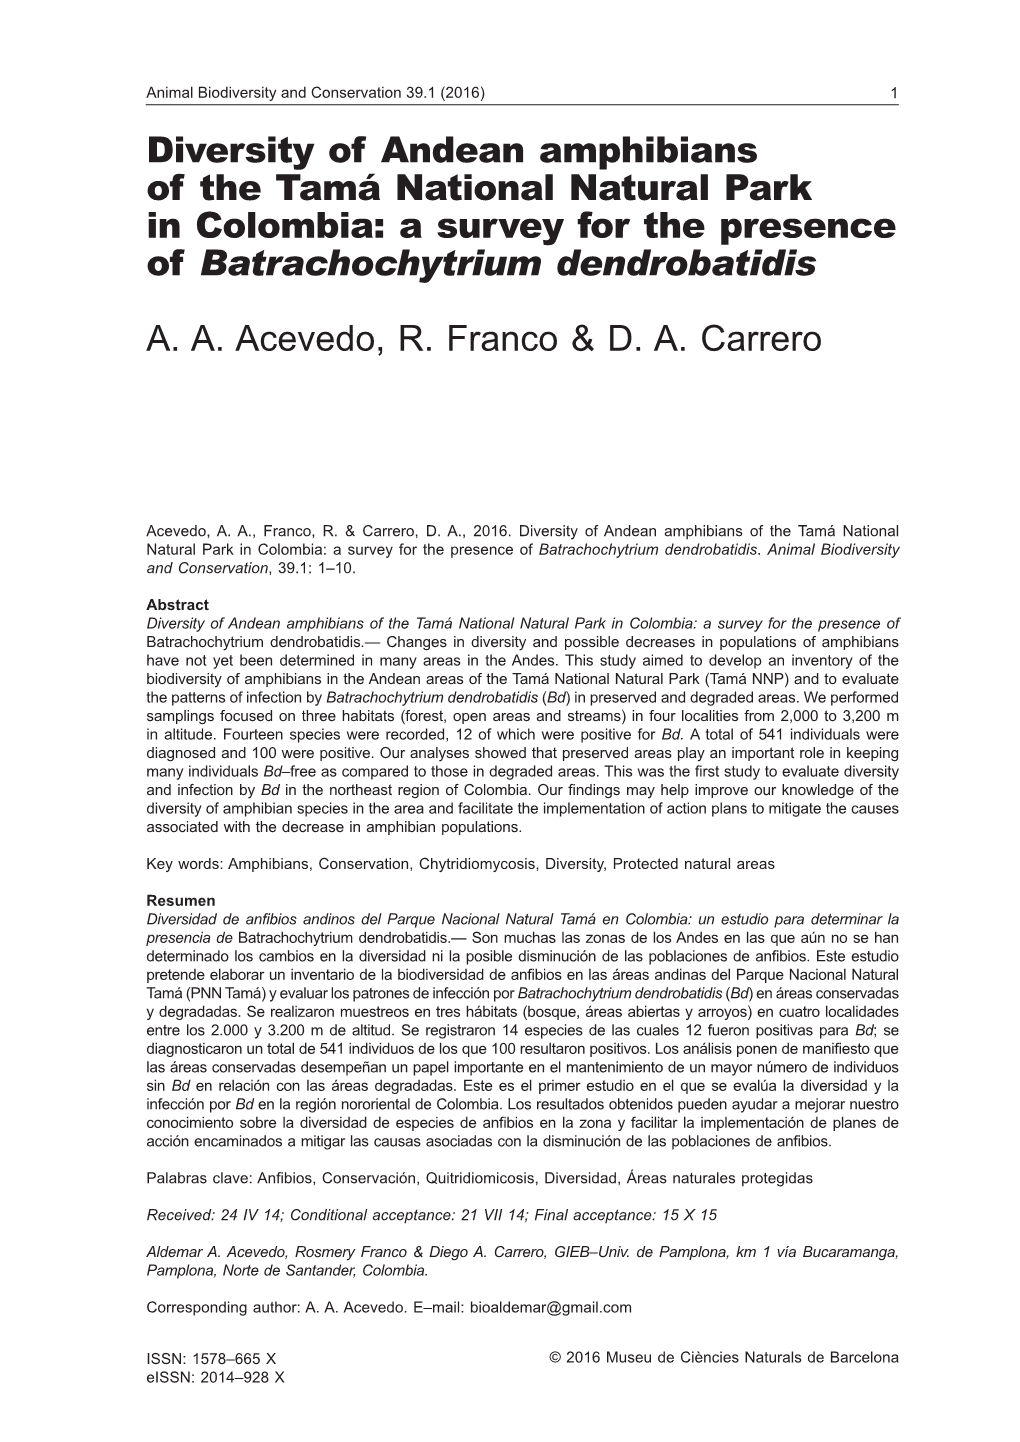 Batrachochytrium Dendrobatidis